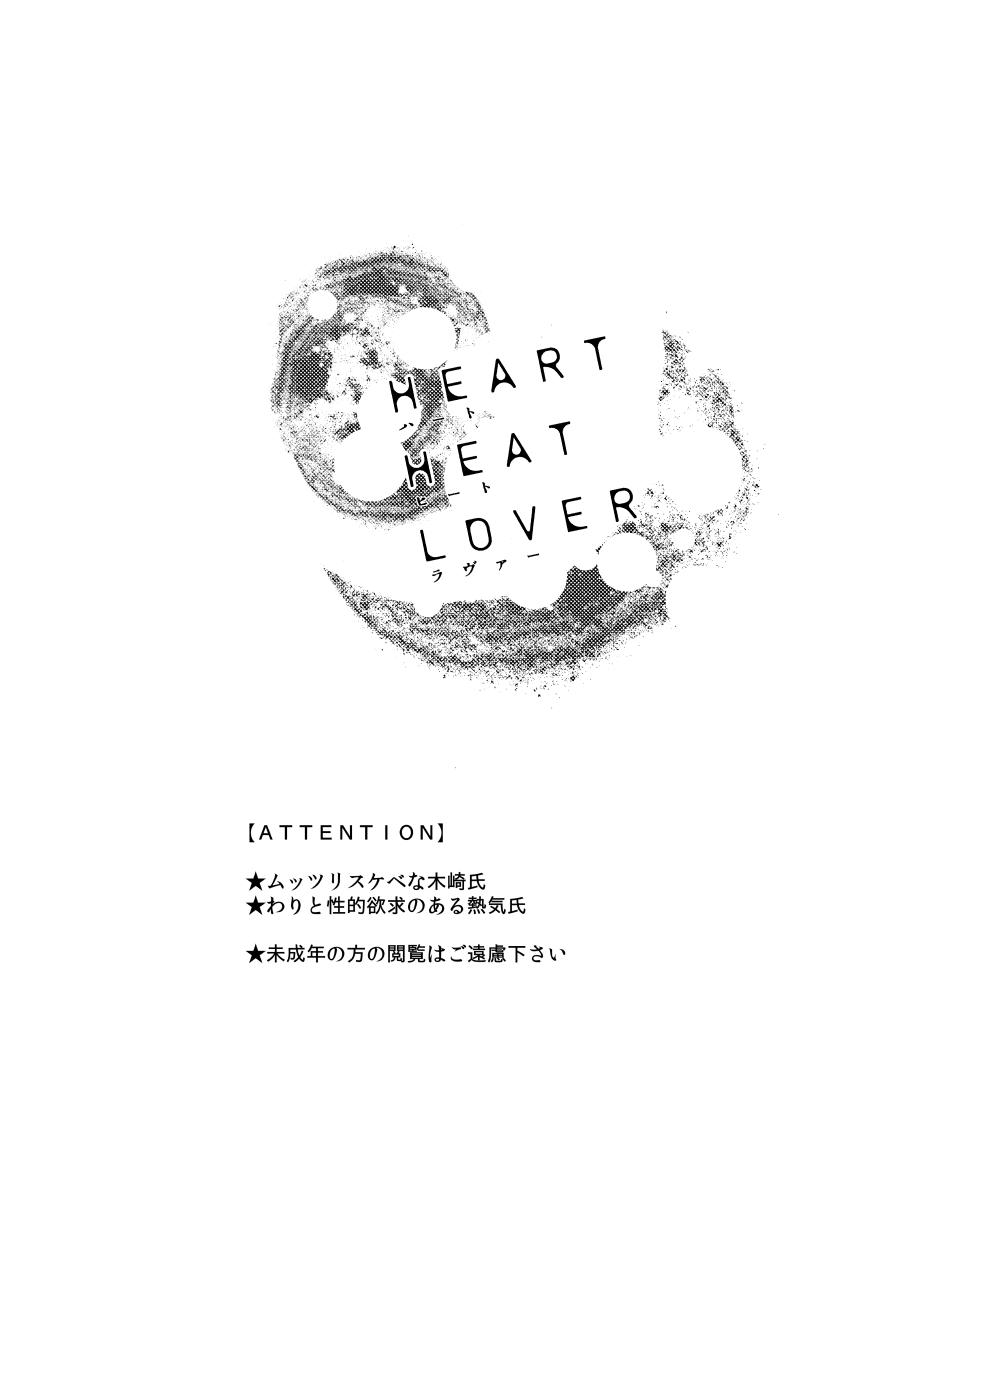 Retro HEART HEAT LOVER - Macross 7 Freeteenporn - Picture 2